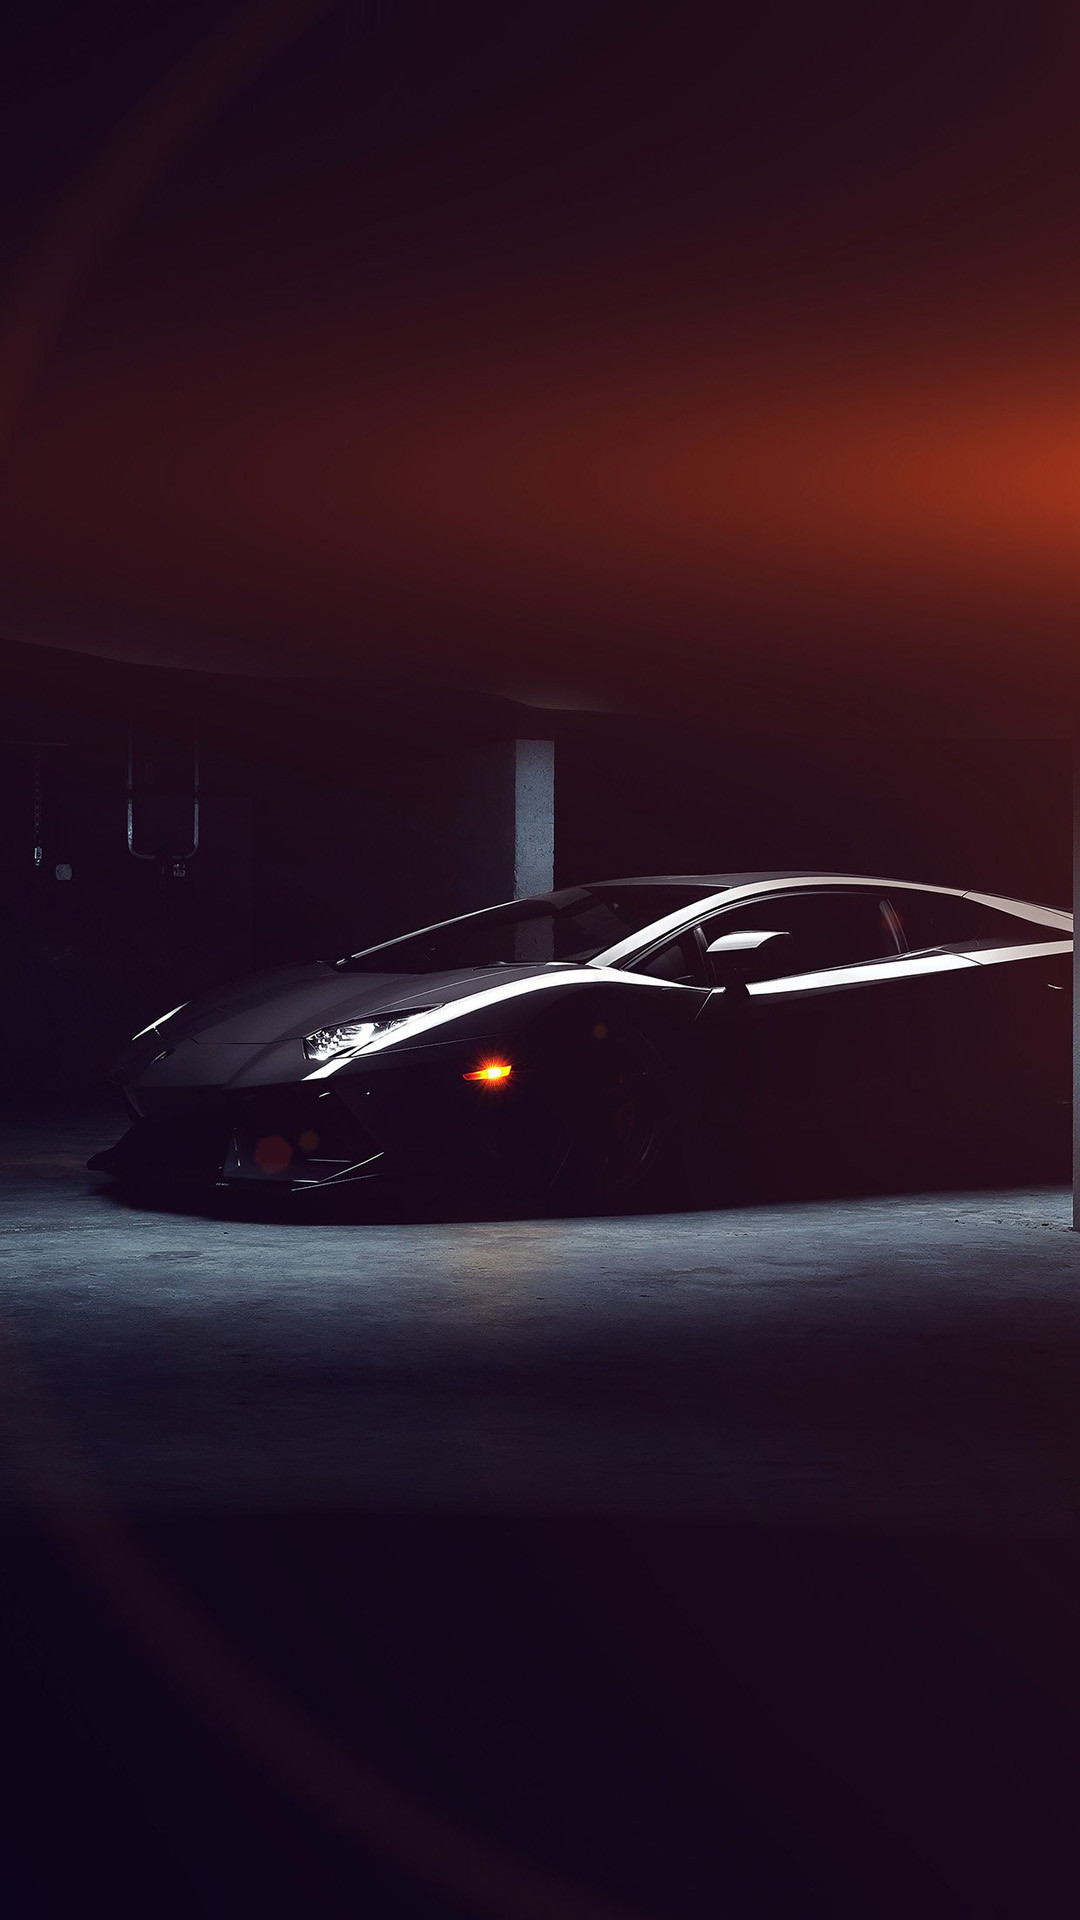 1080x1920 <b>Lamborghini Car Dark Black Flare hd mobile wallpapers</b>